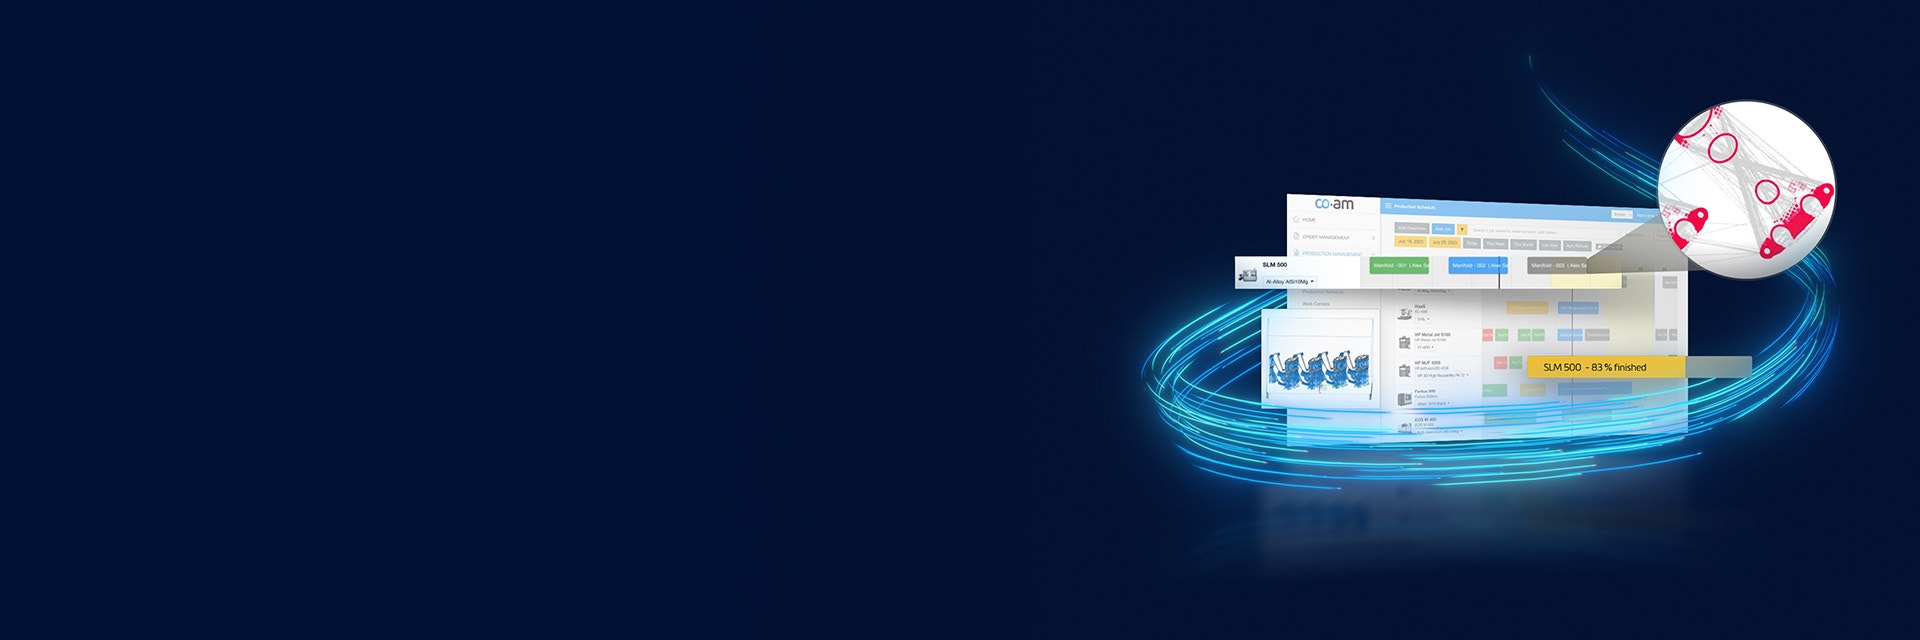 Bildschirm der CO-AM-Software mit verschiedenen Feldern und neonblauen Linien im Kreis